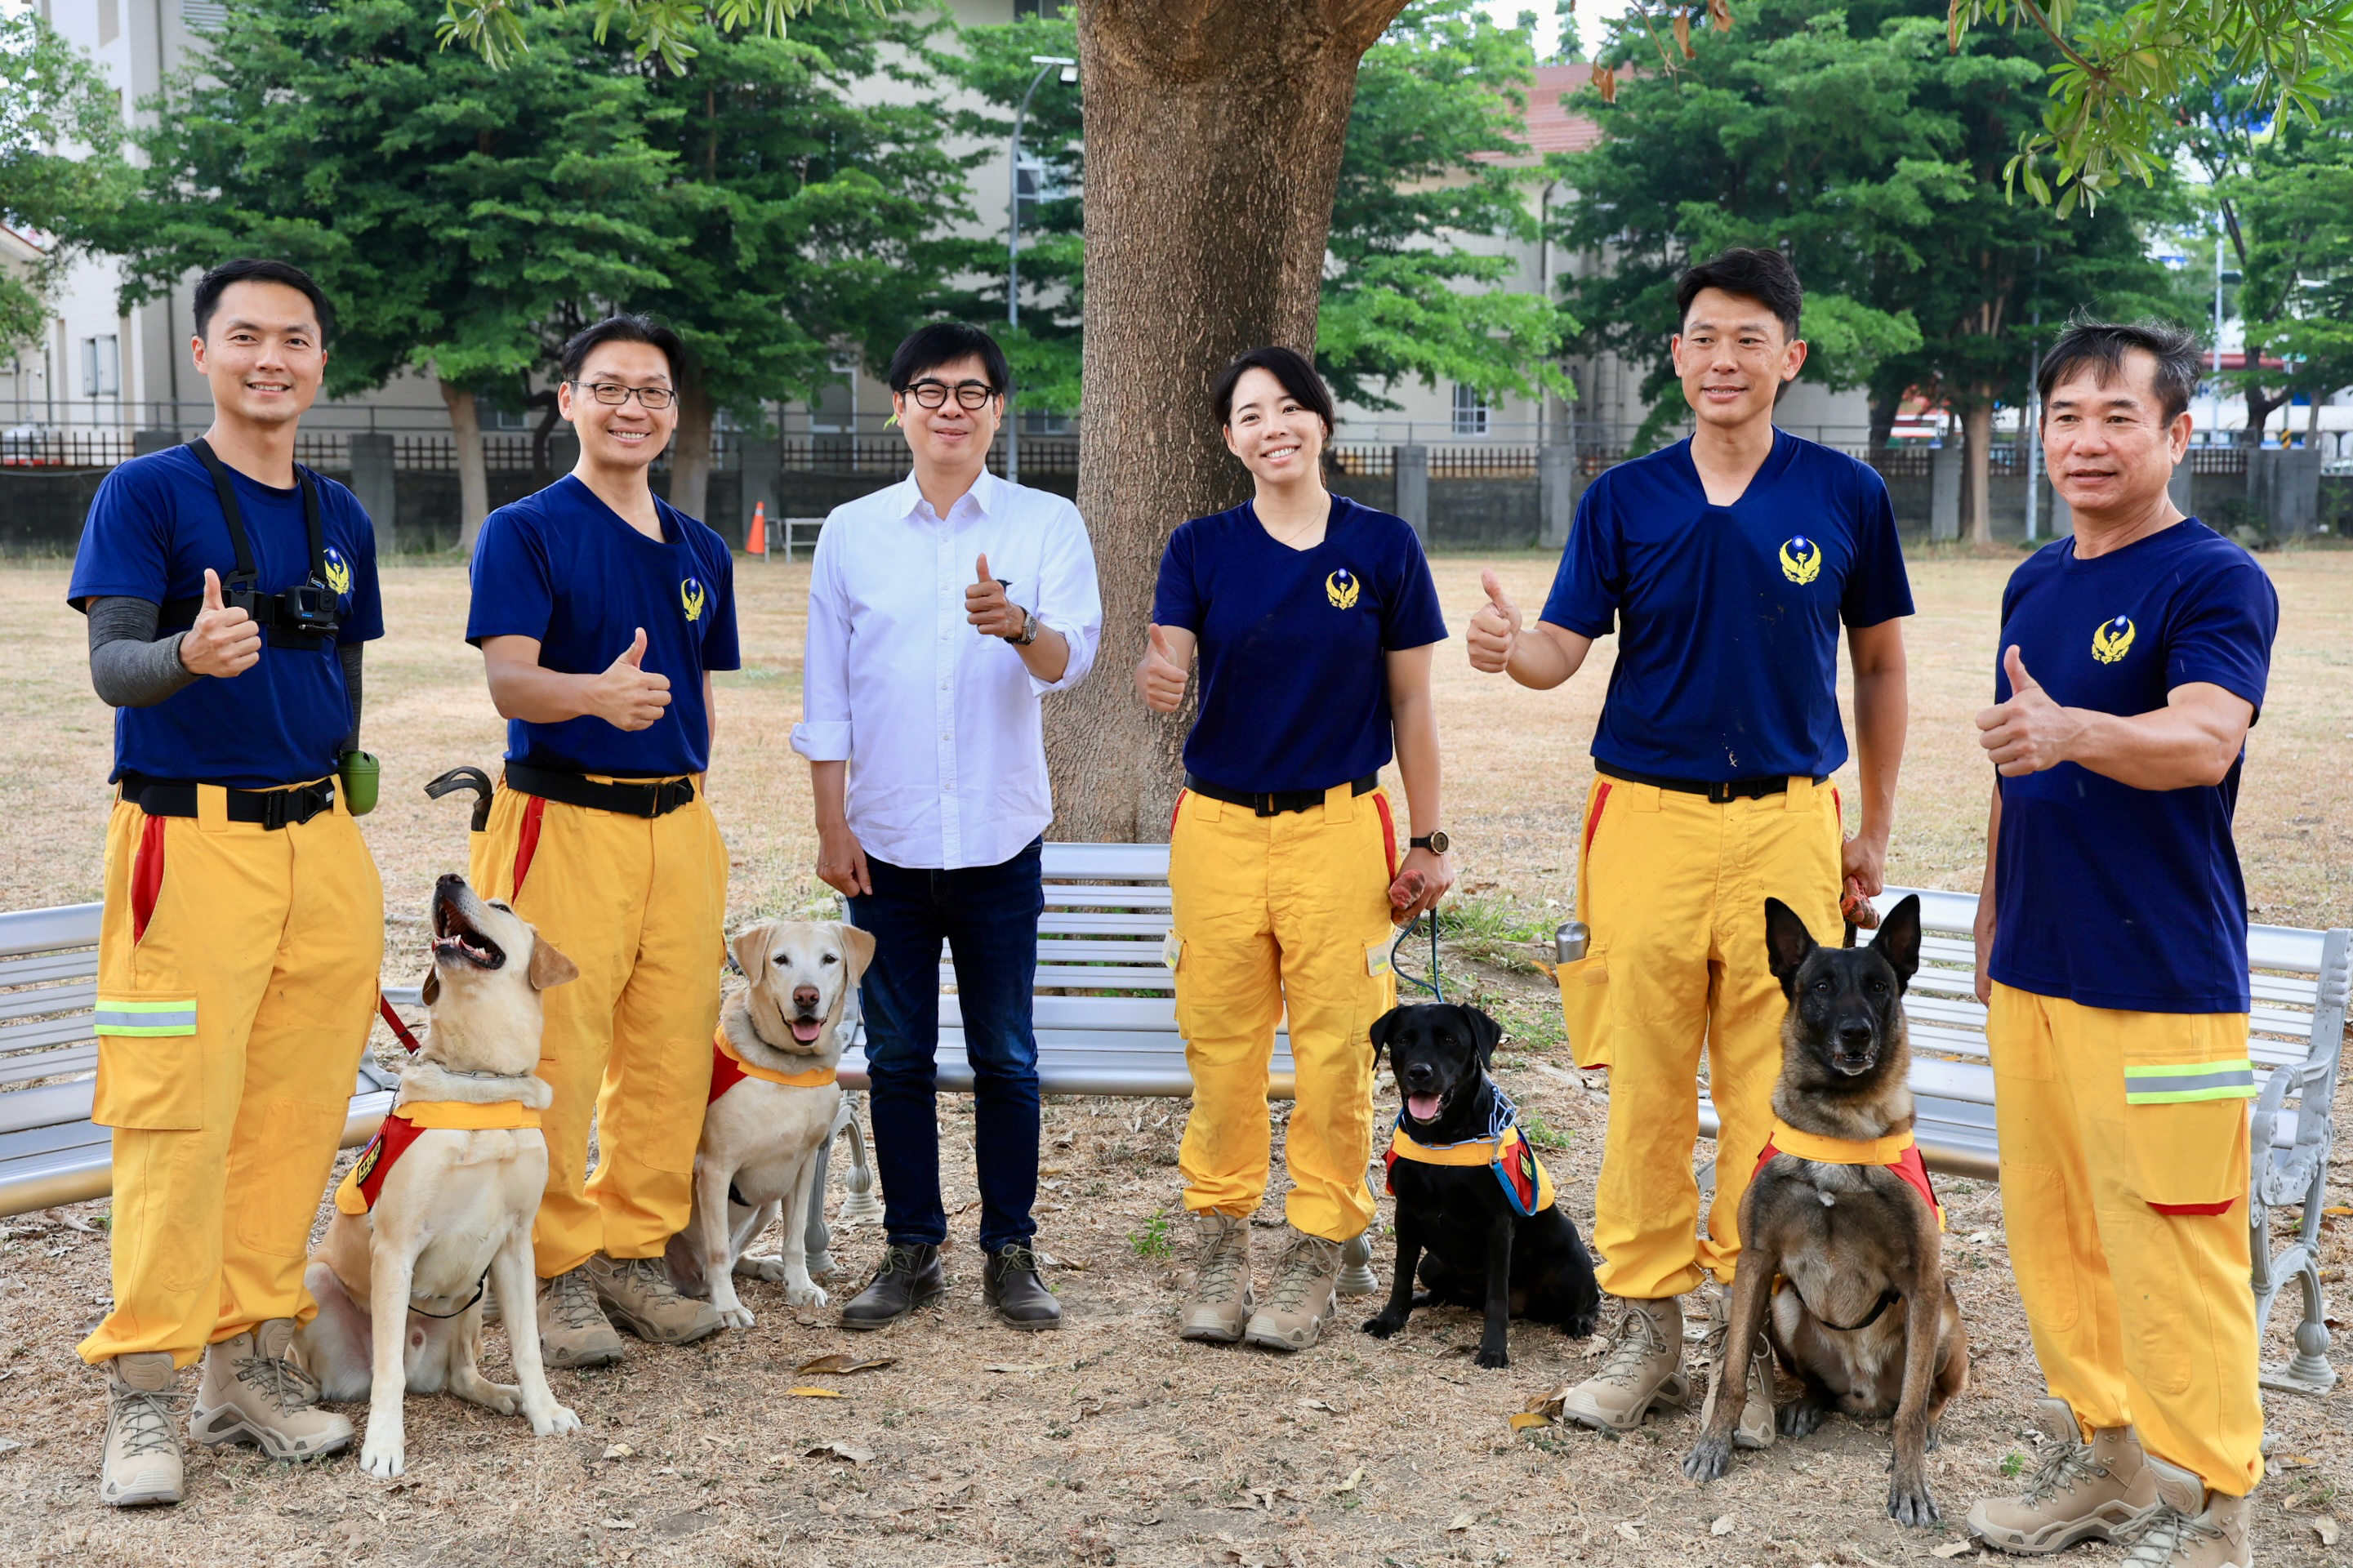 今国际搜救犬日，市长陈其迈到搜救犬驯养中心表达关心之意，并和领犬员及搜救犬体验「瓦砾堆搜索」、「摆荡平台」及「抛物拾回」等犬只服从训练。图／高市消防局提供